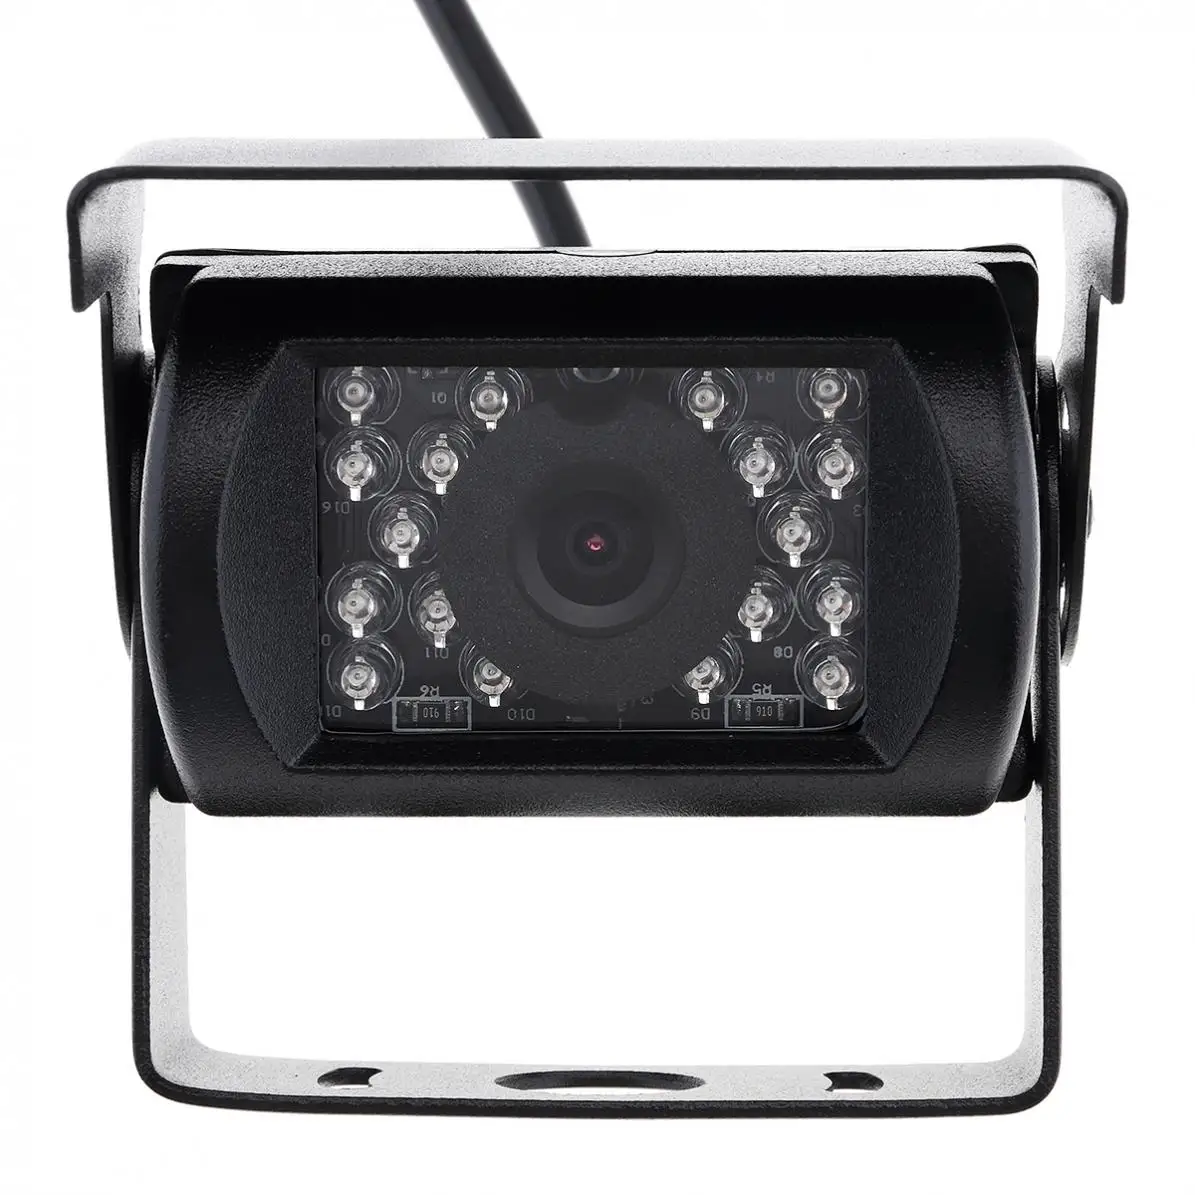 7 дюймов TFT ЖК-дисплей автомобильный монитор Беспроводной версия HD Дисплей Камера Обратный помощь Камера система парковки с 18IR